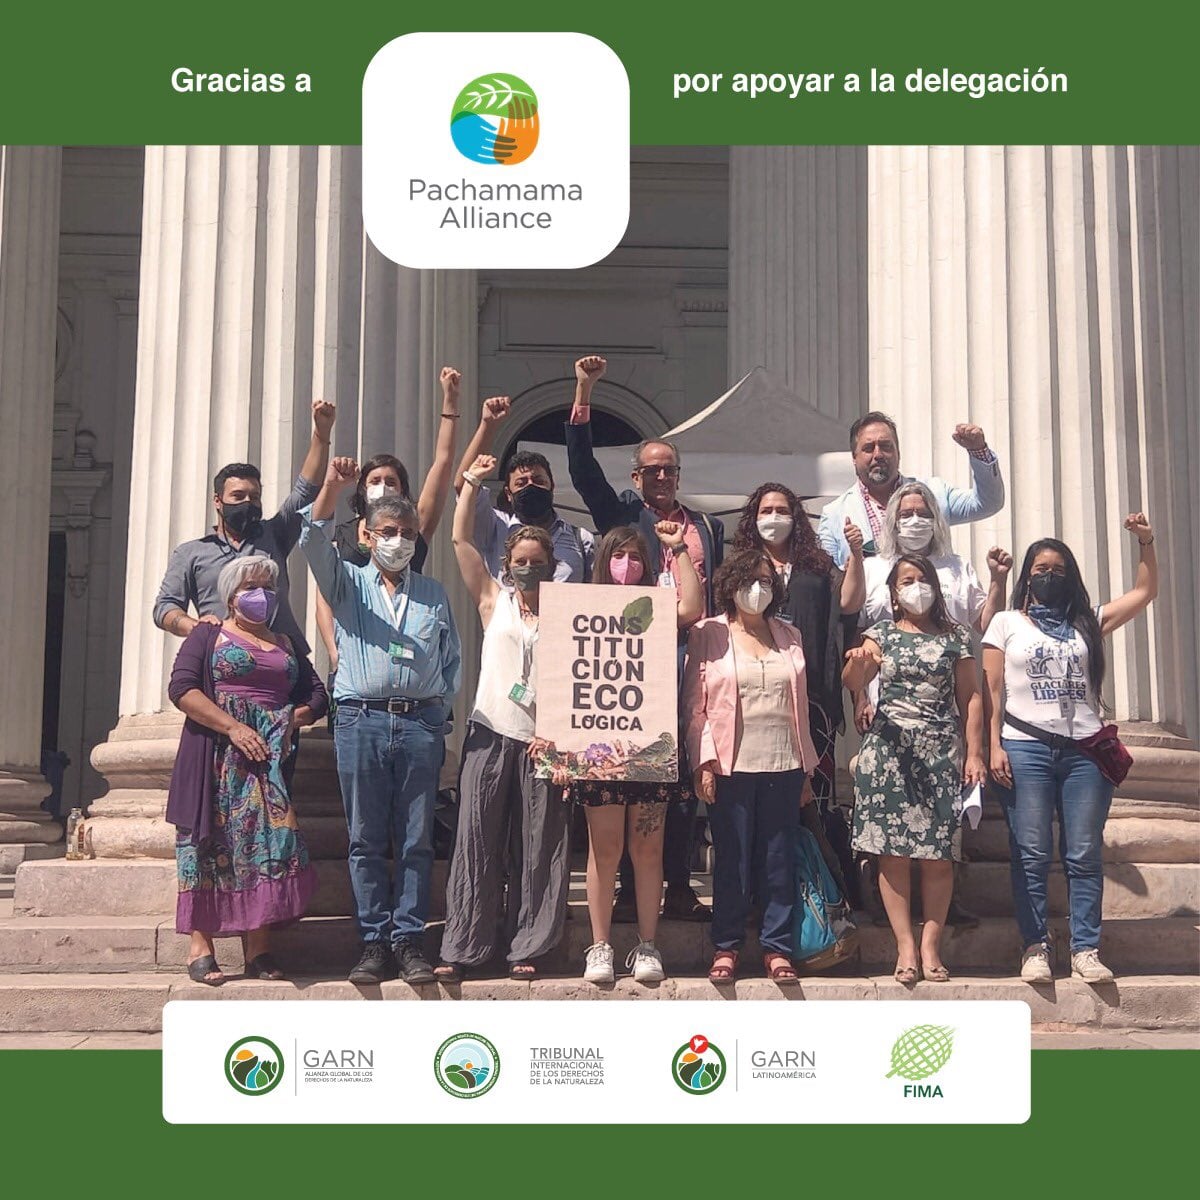 Delegación impulsa el reconocimiento de los Derechos de la Naturaleza en Chile